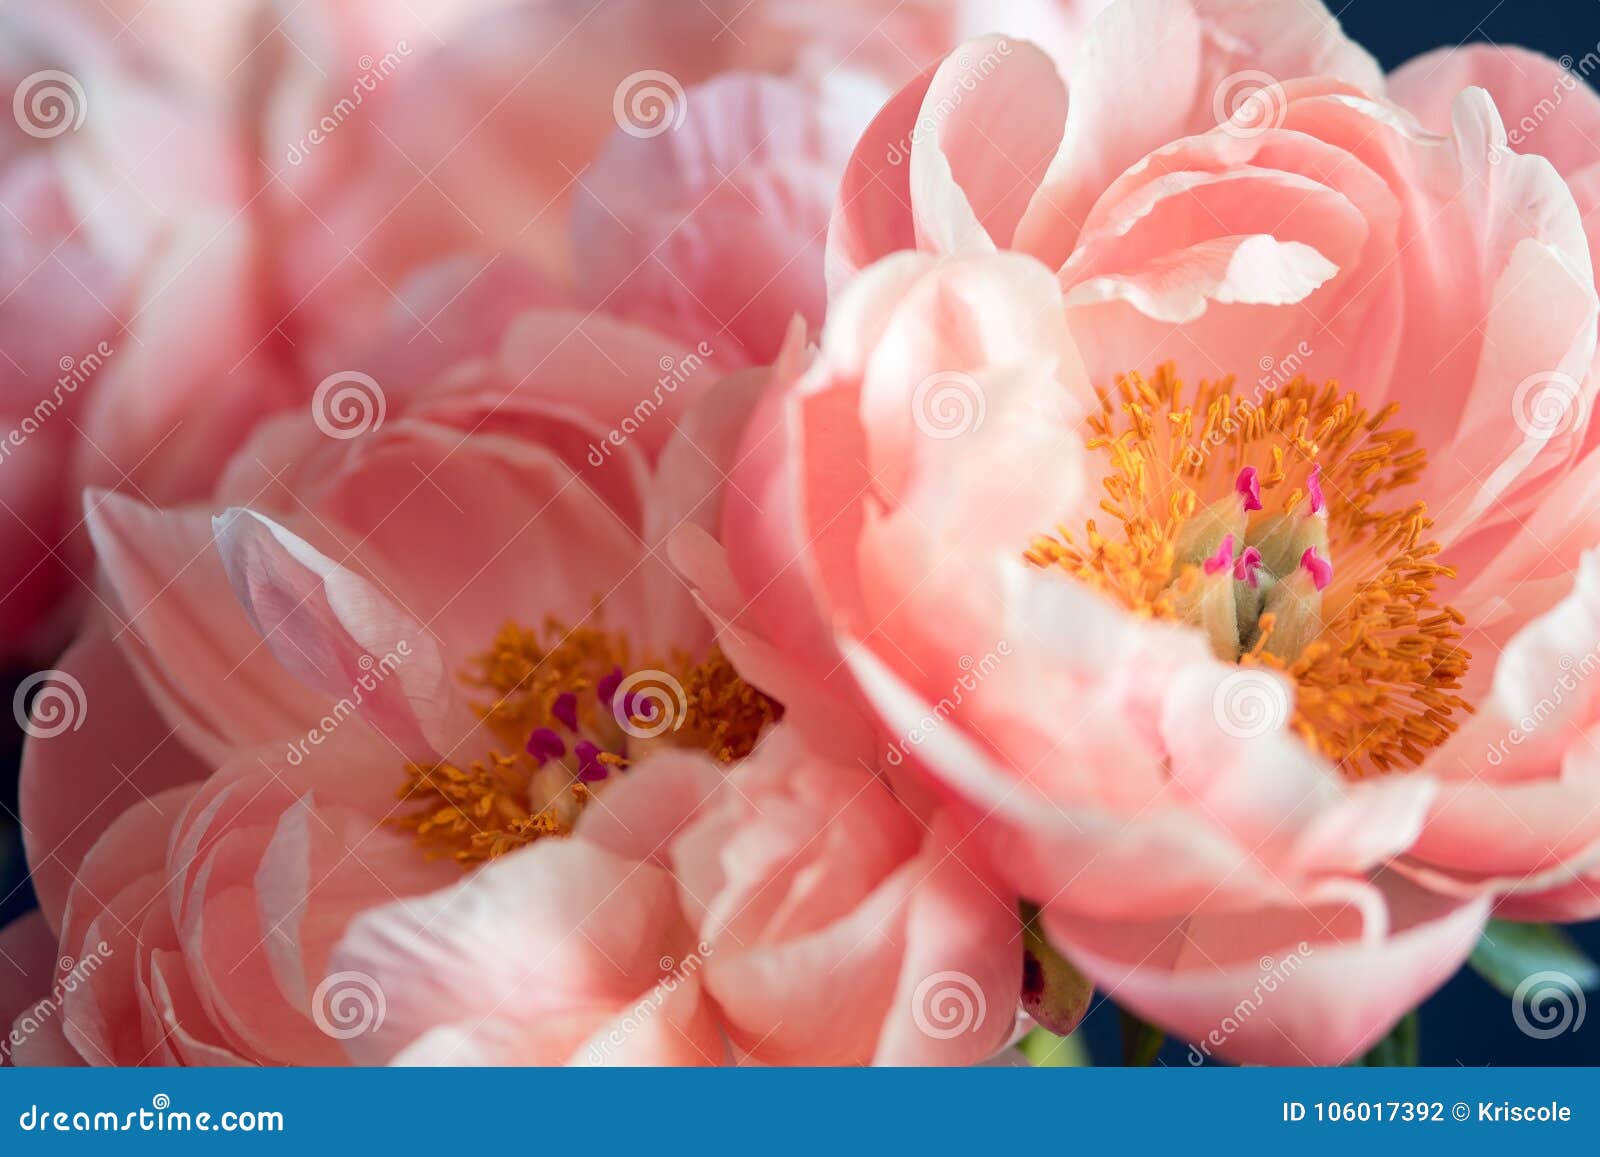 beautiful pink peonies, flowers